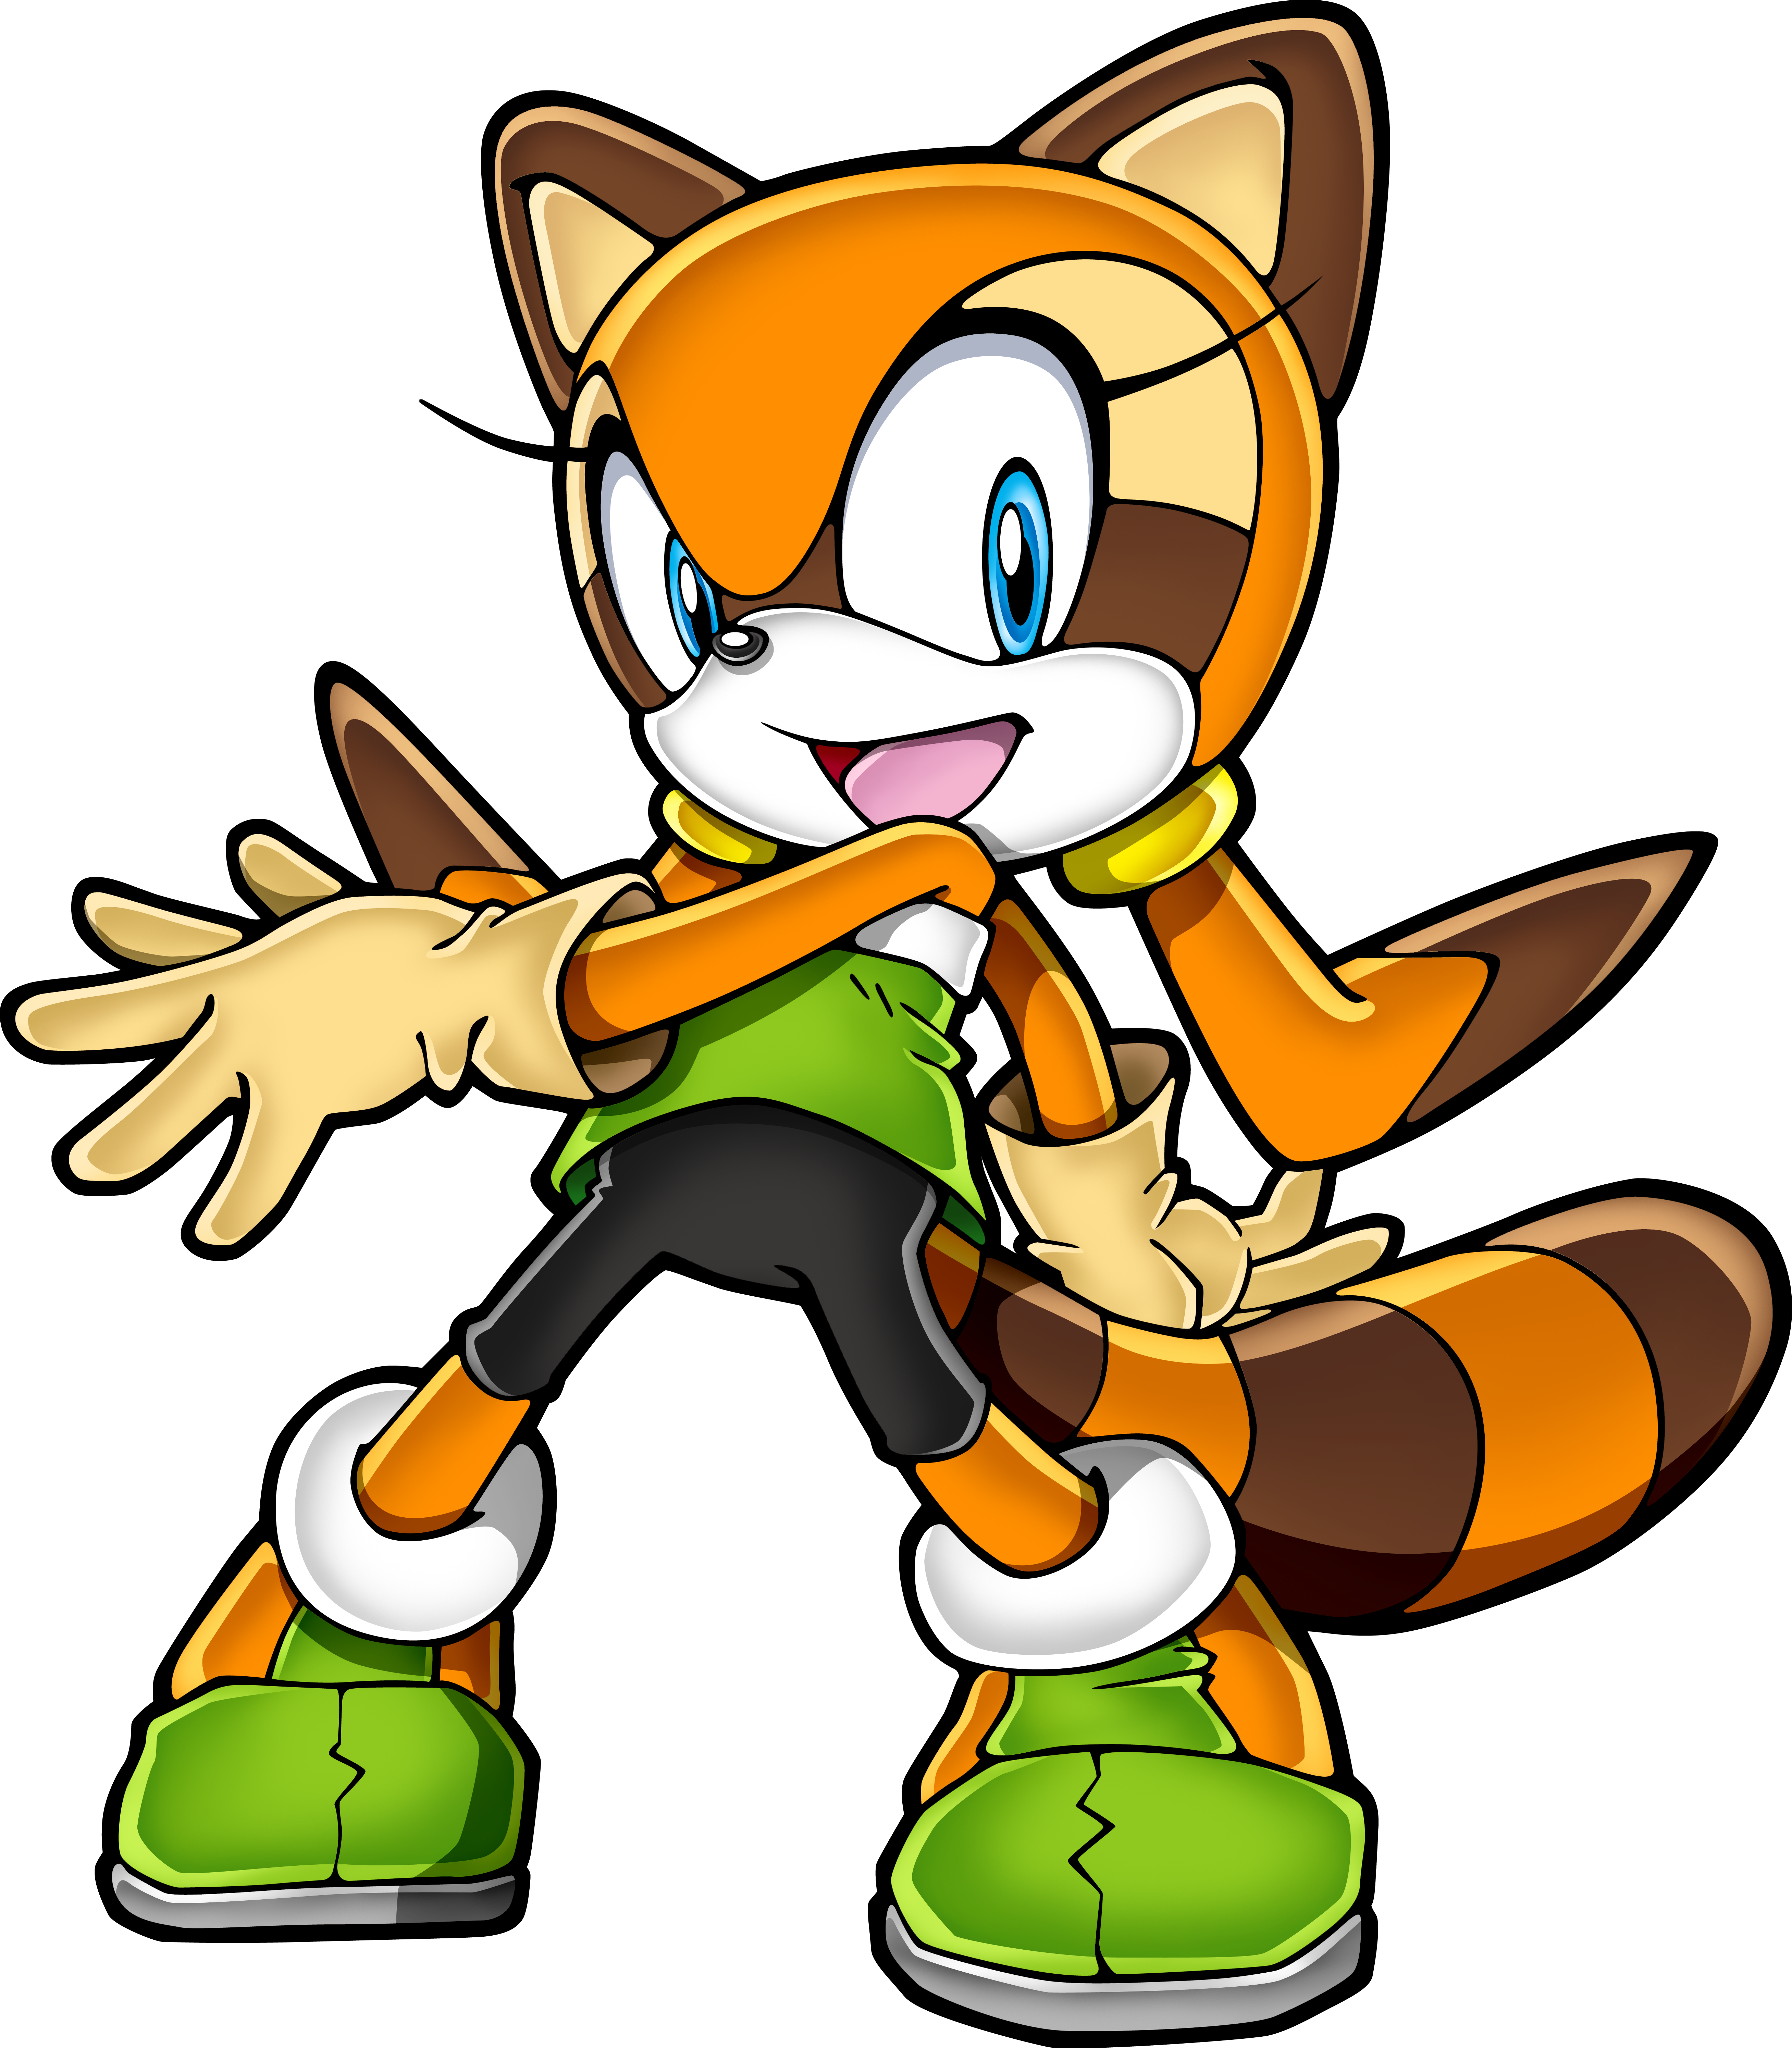 クリーム ザ ラビット List Of Sonic The Hedgehog Video Game Characters Cream The Rabbit Japaneseclass Jp